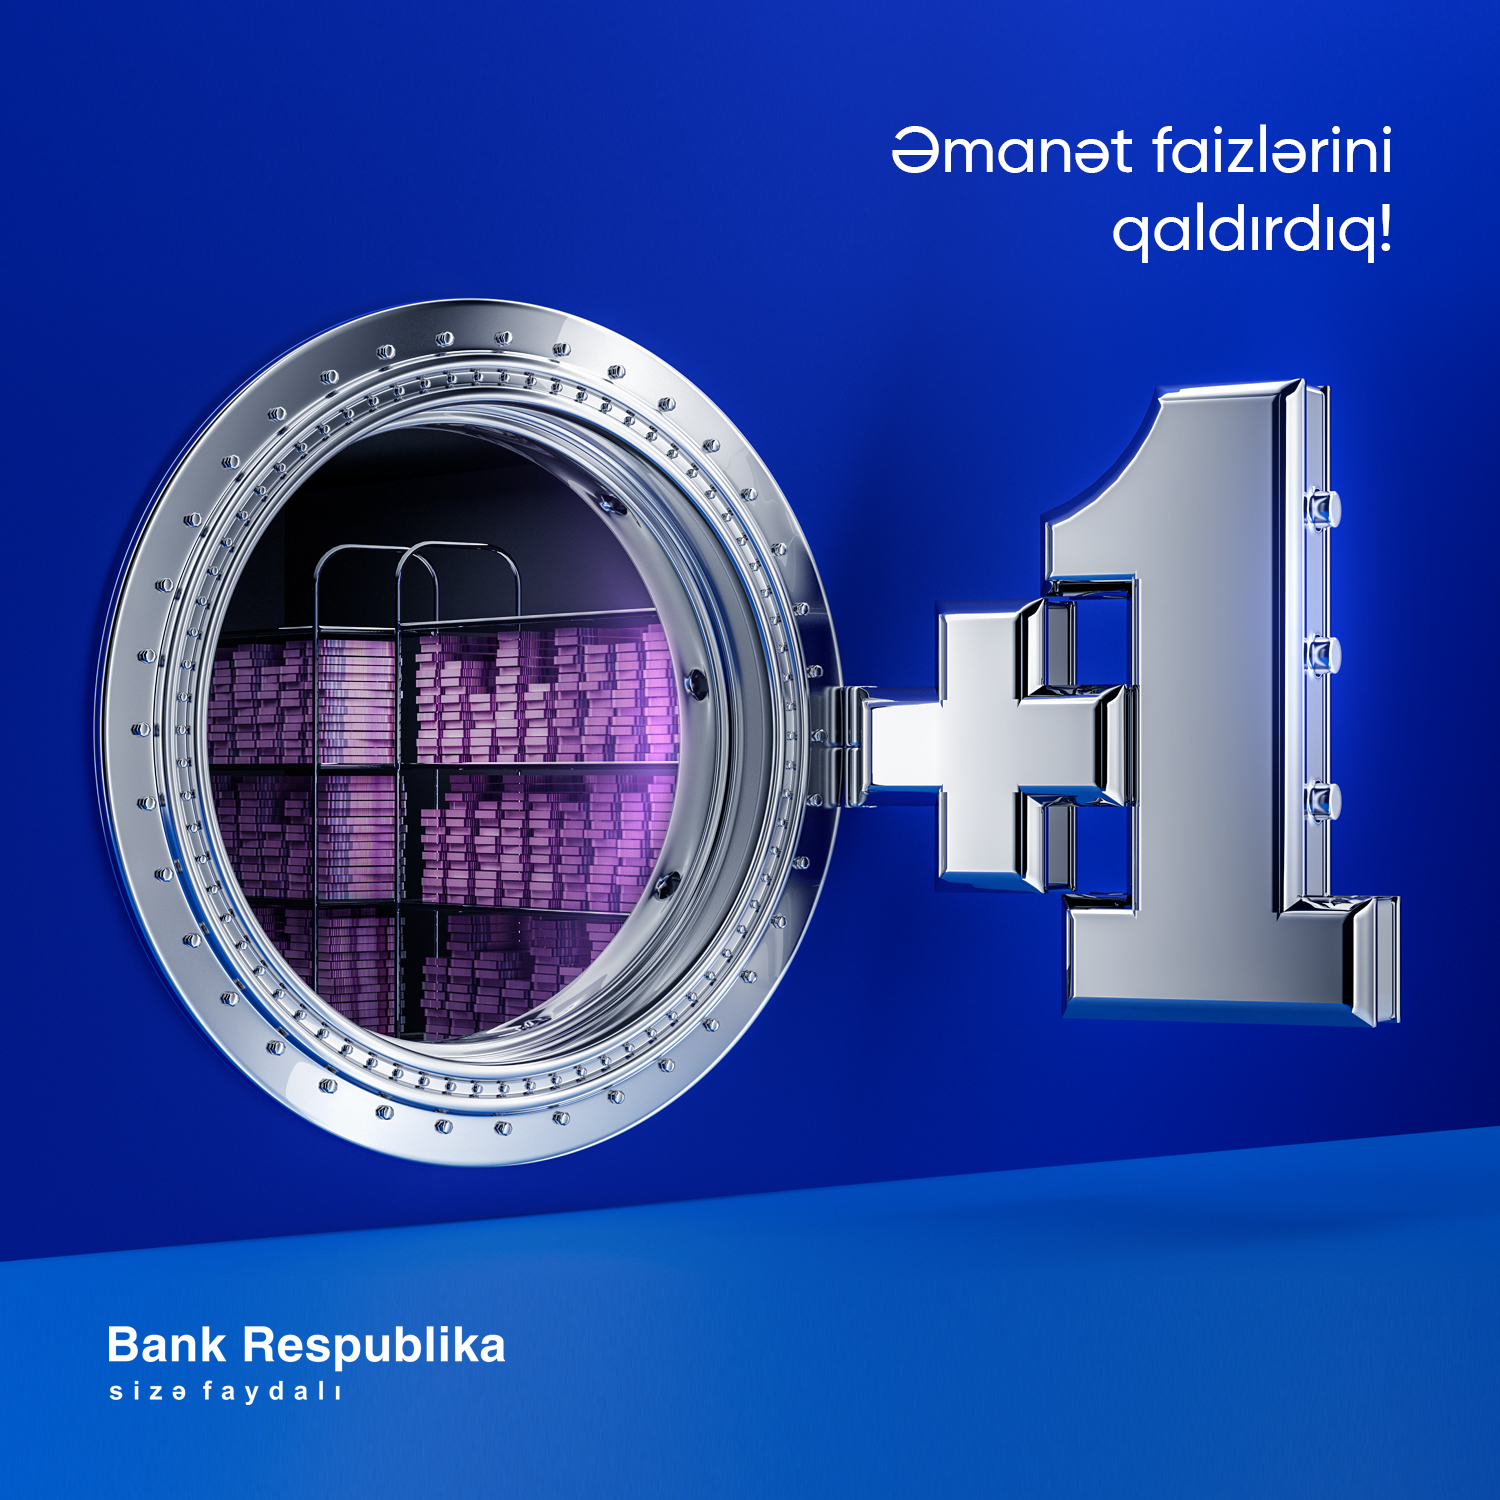 Bank Respublika əmanət faizlərini 1% artırdı!